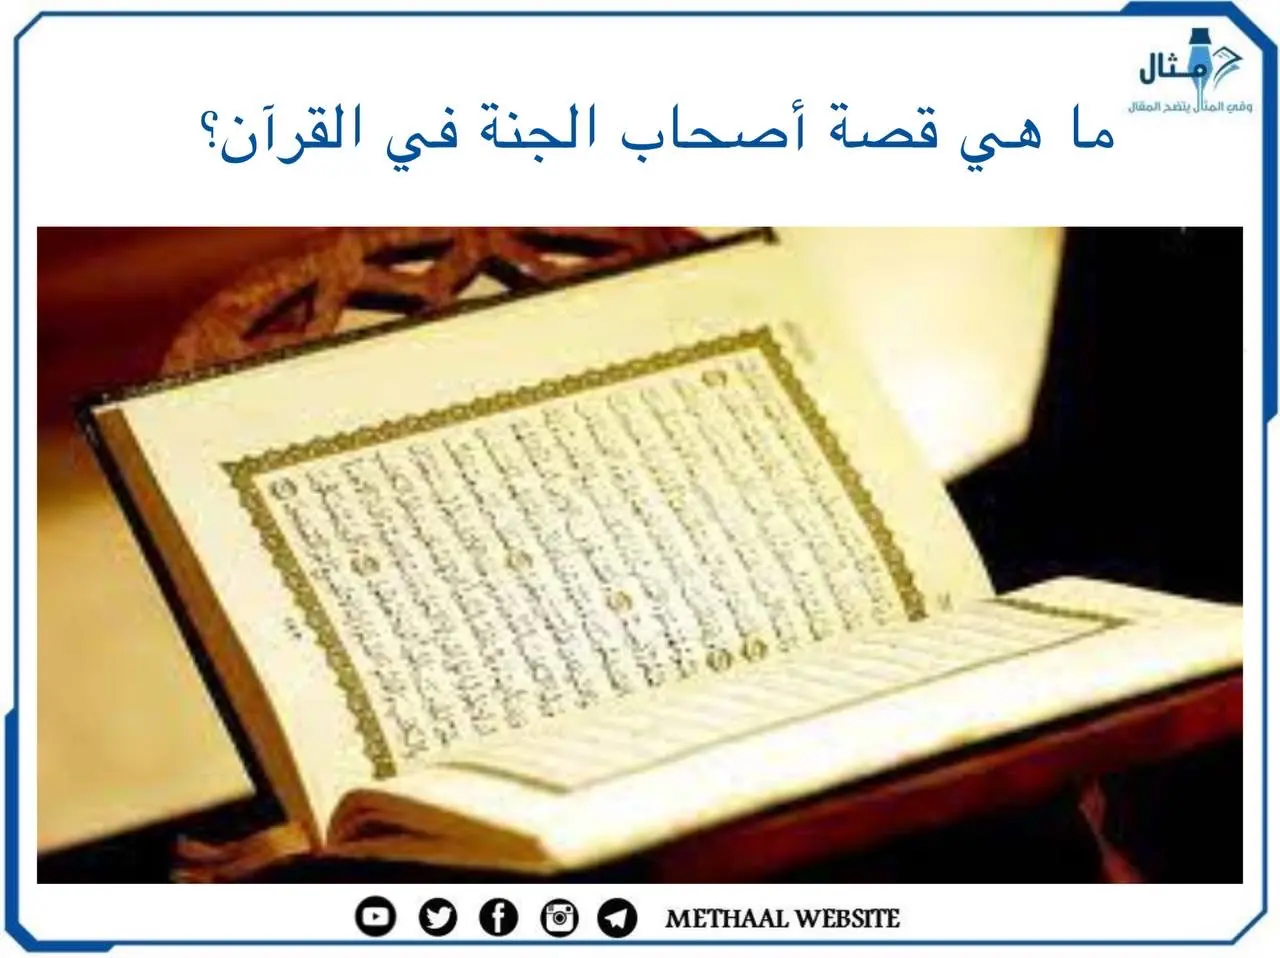 ما هي قصة أصحاب الجنة في القرآن؟